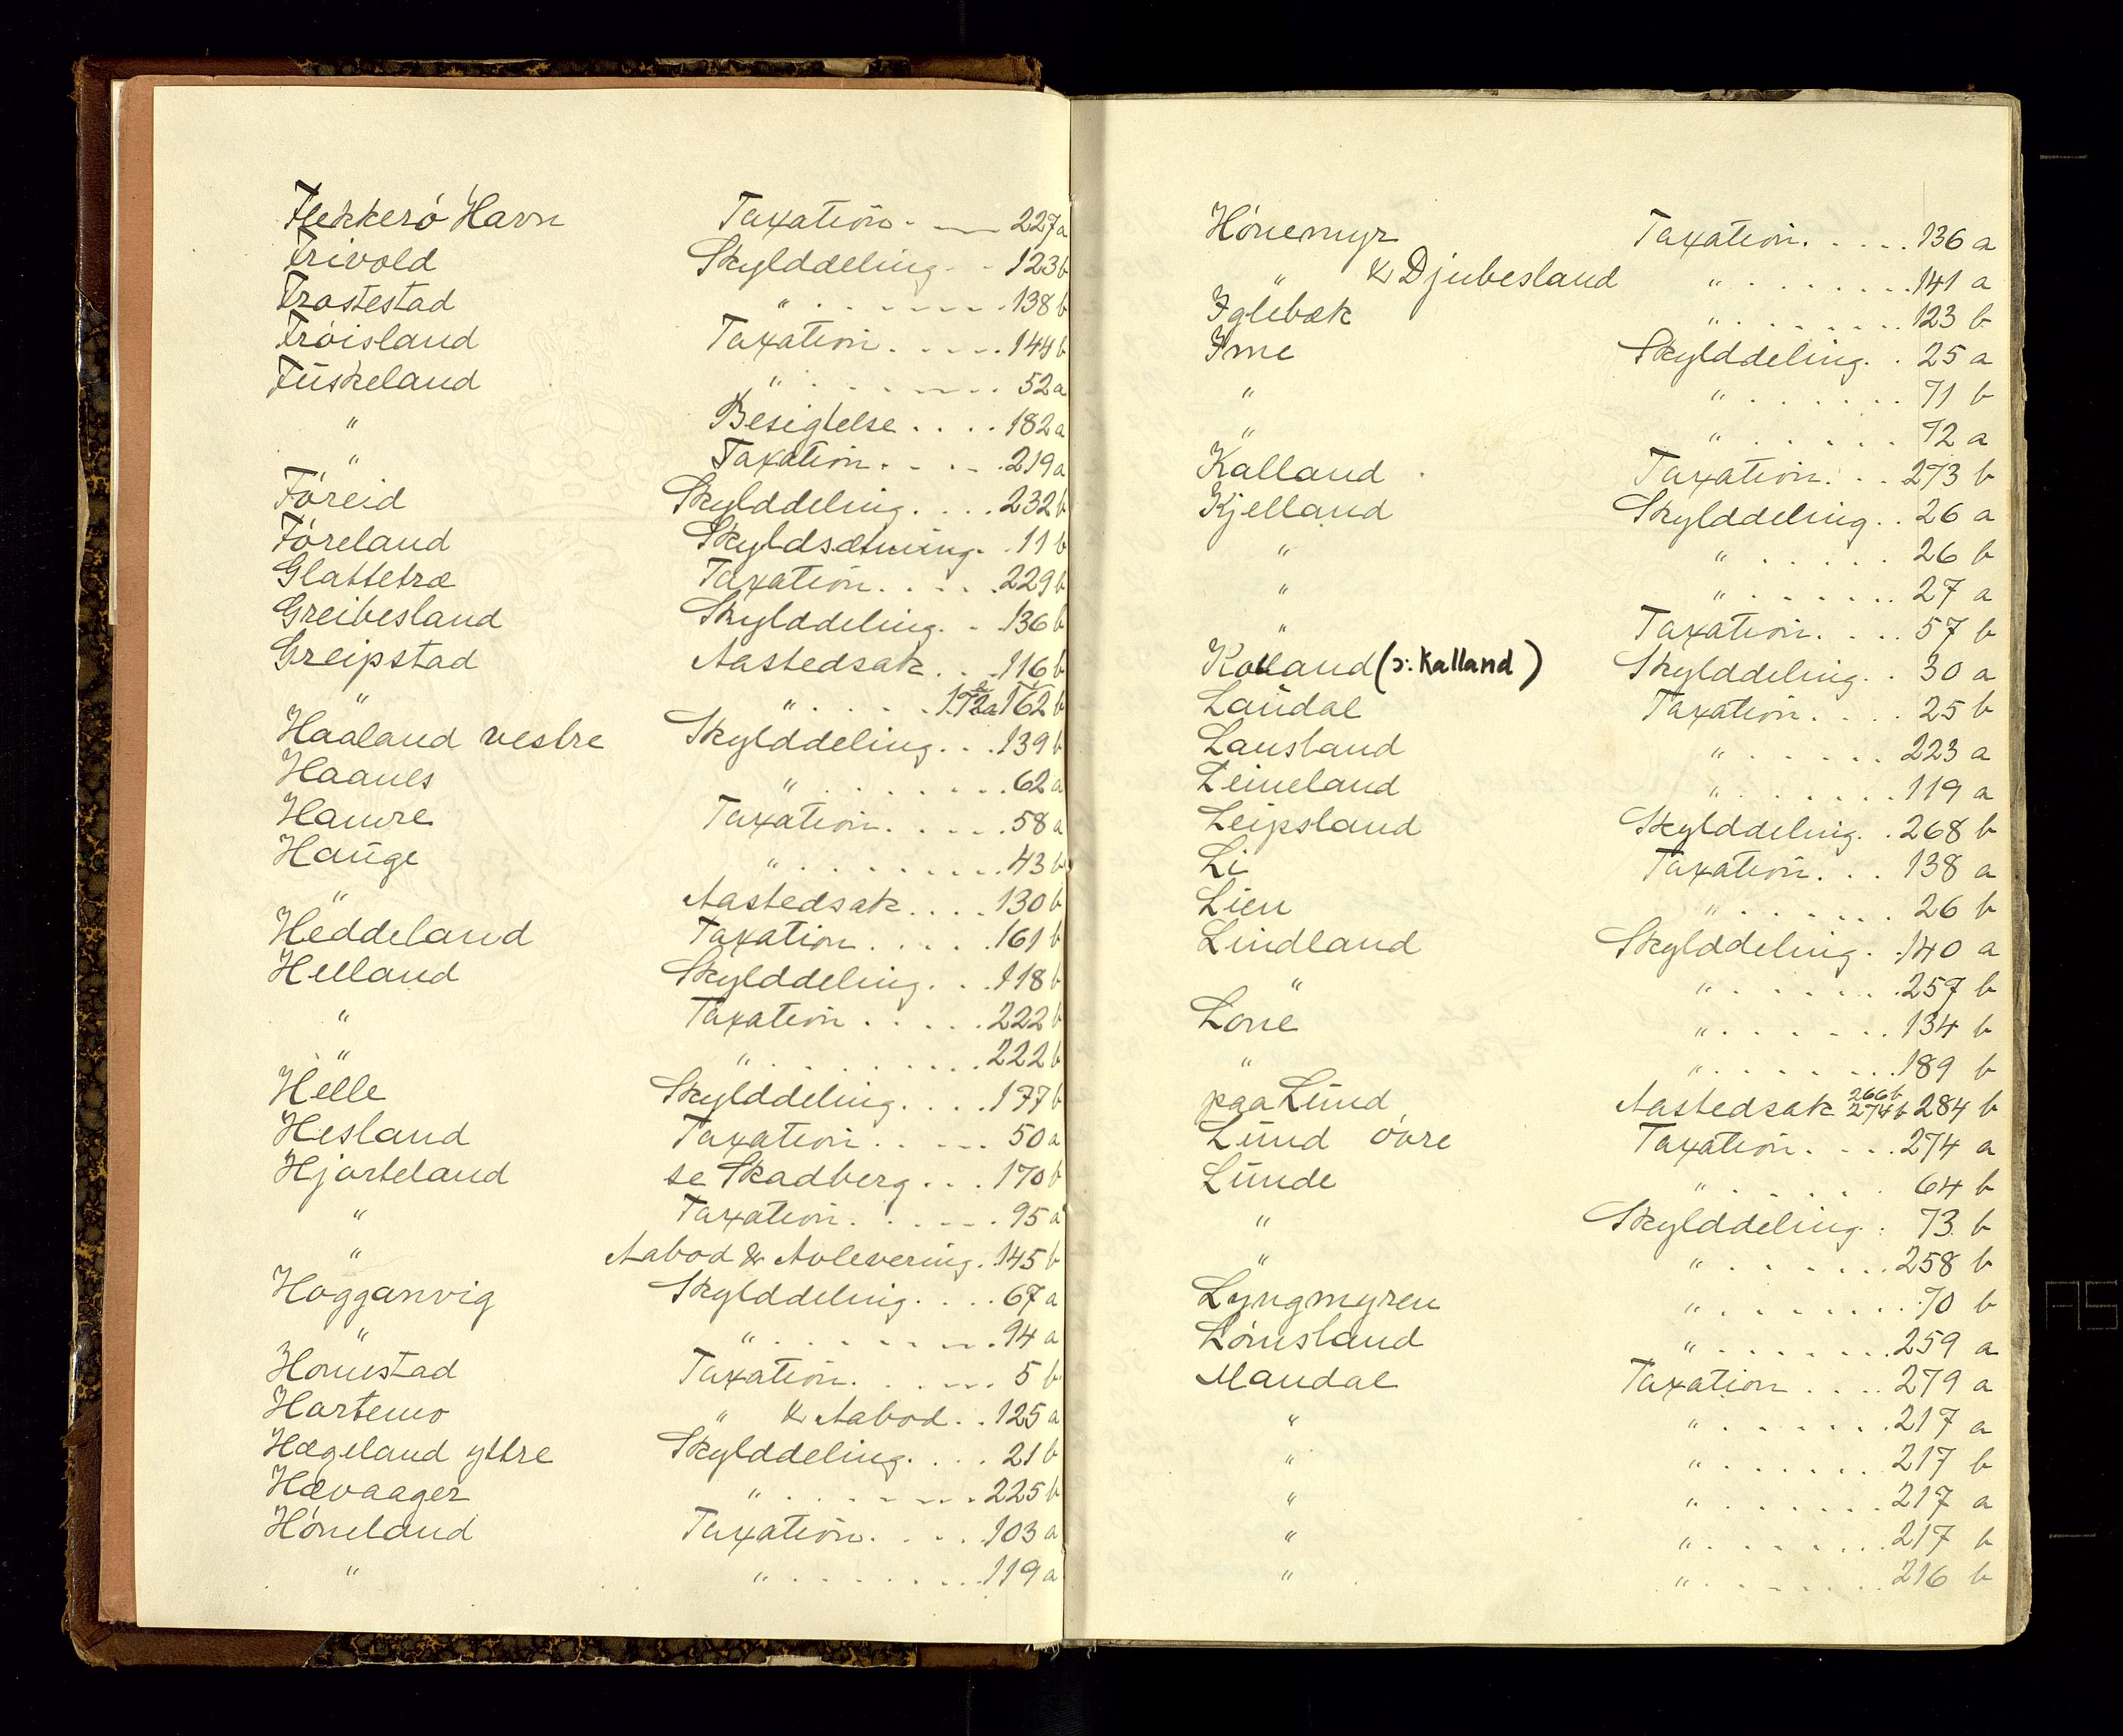 Mandal sorenskriveri, SAK/1221-0005/001/F/Fb/L0012: Ekstrarettsprotokoll med register for fast eiendom nr 10, 1834-1839